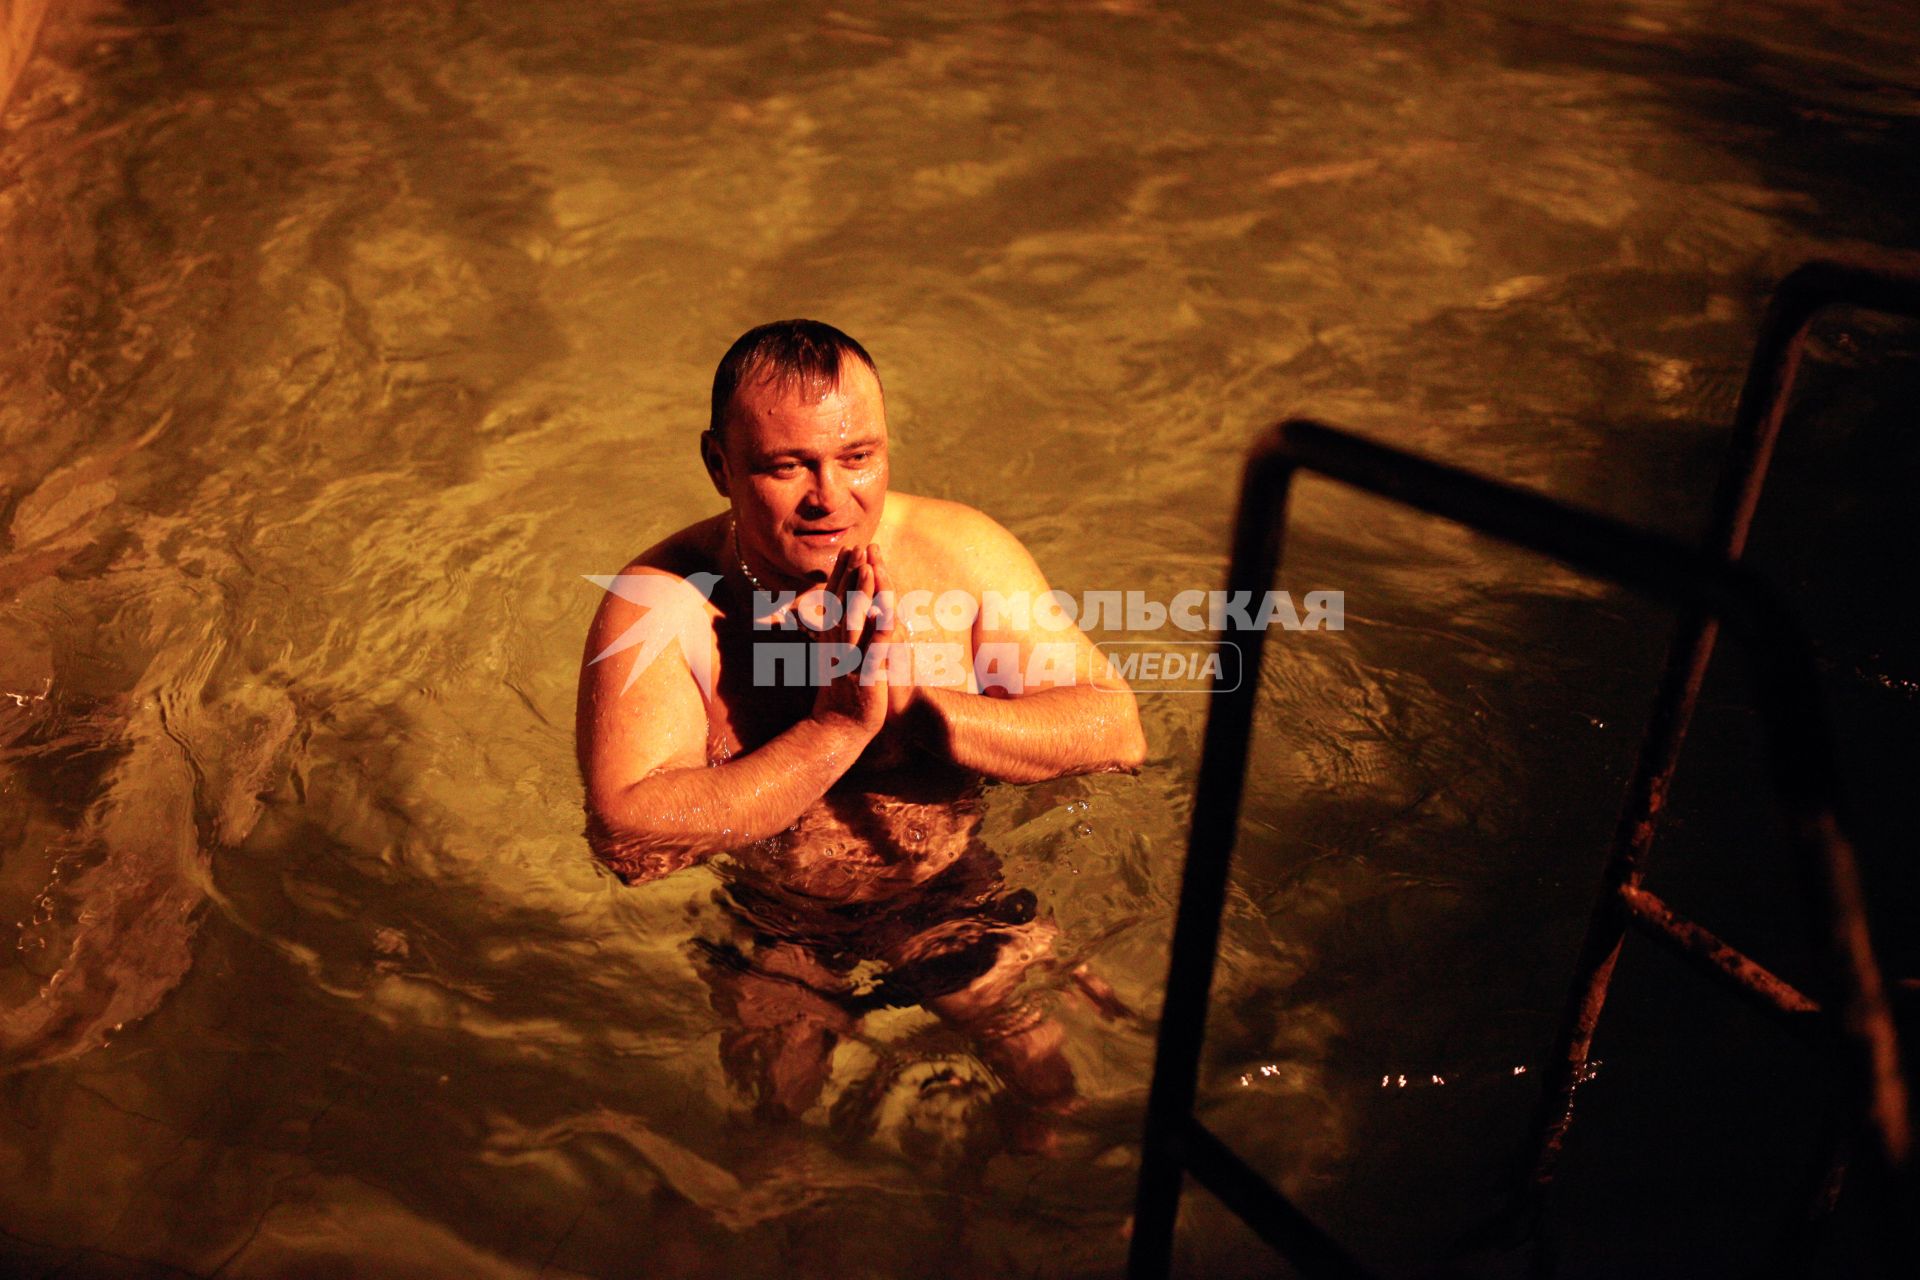 Крещенские купания в Ставрополе. На снимке: мужчина окунается в купели.